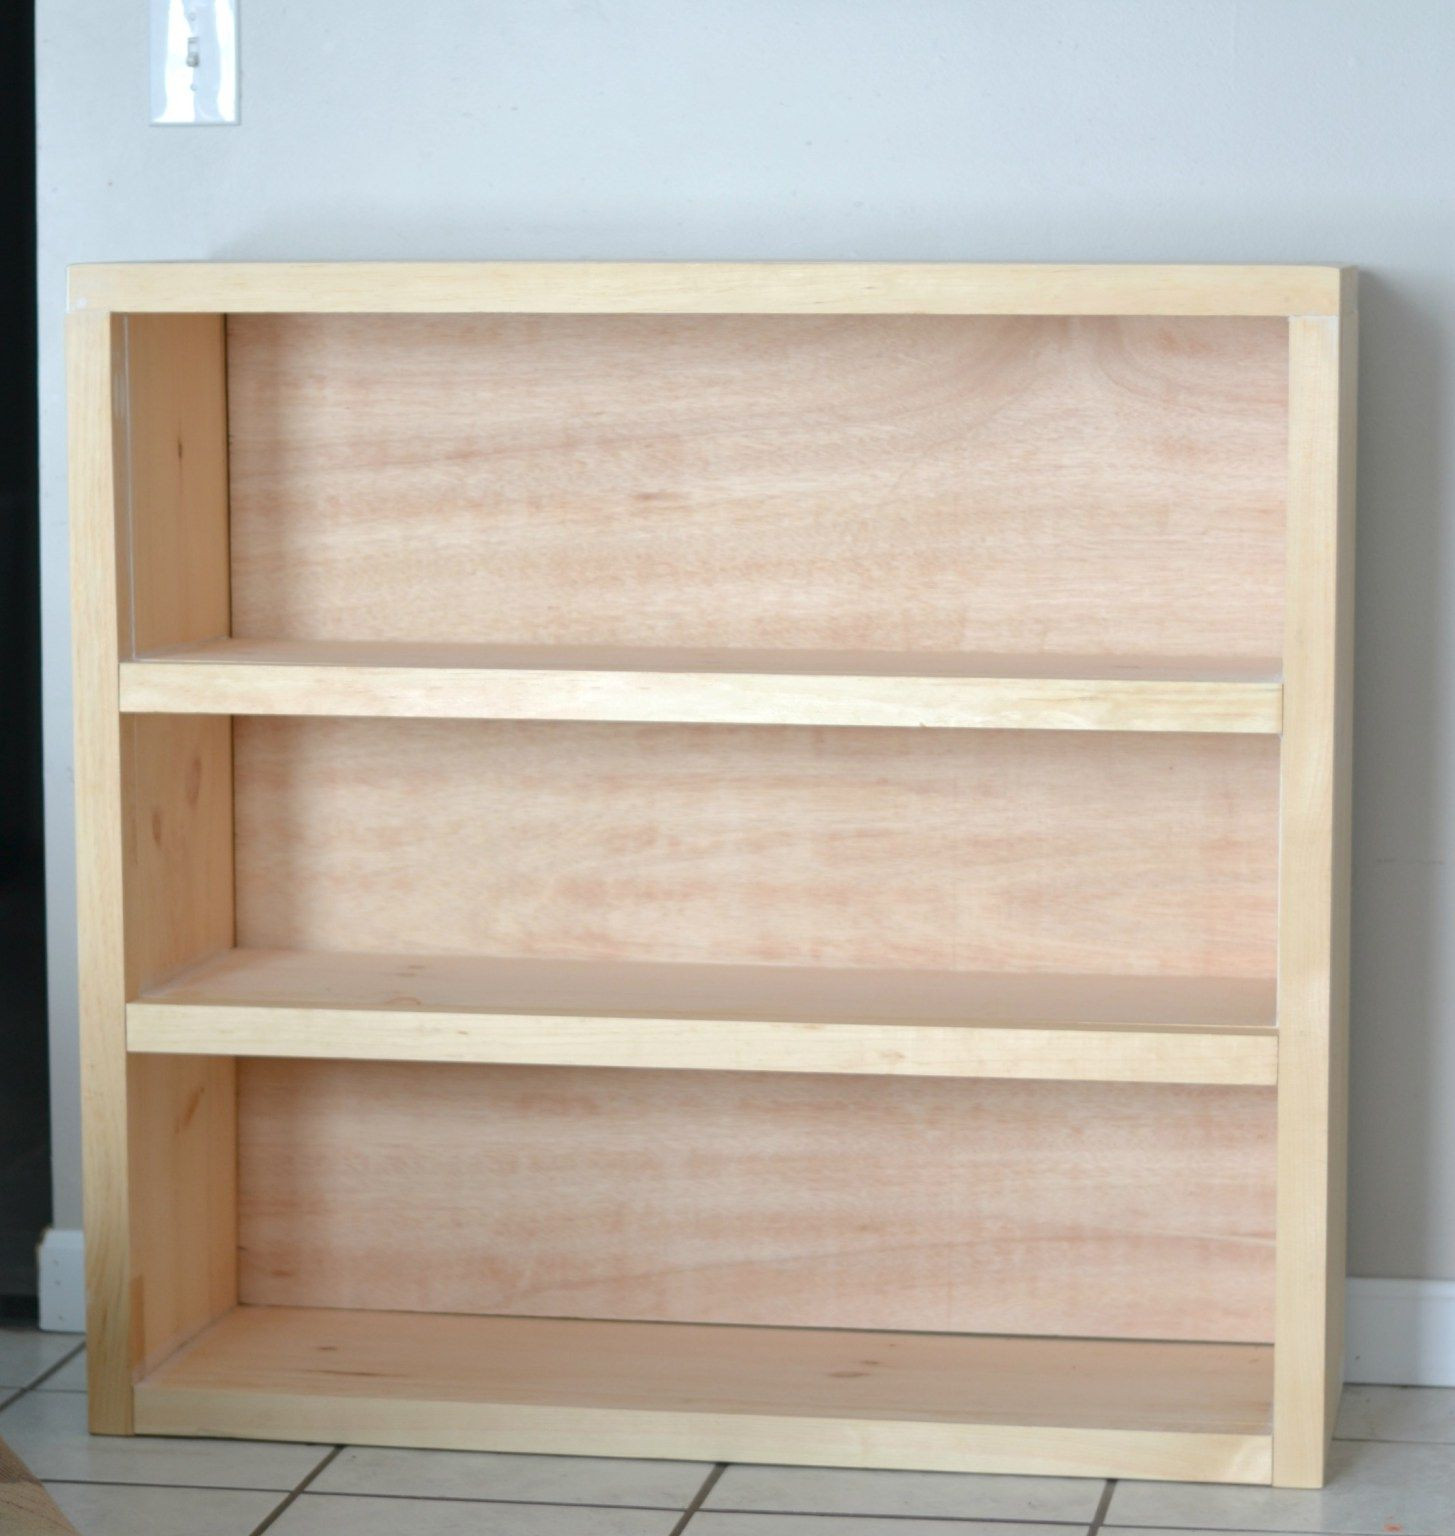 DIY Bookcases Plan
 Do you wanna build a bookcase bookshelves